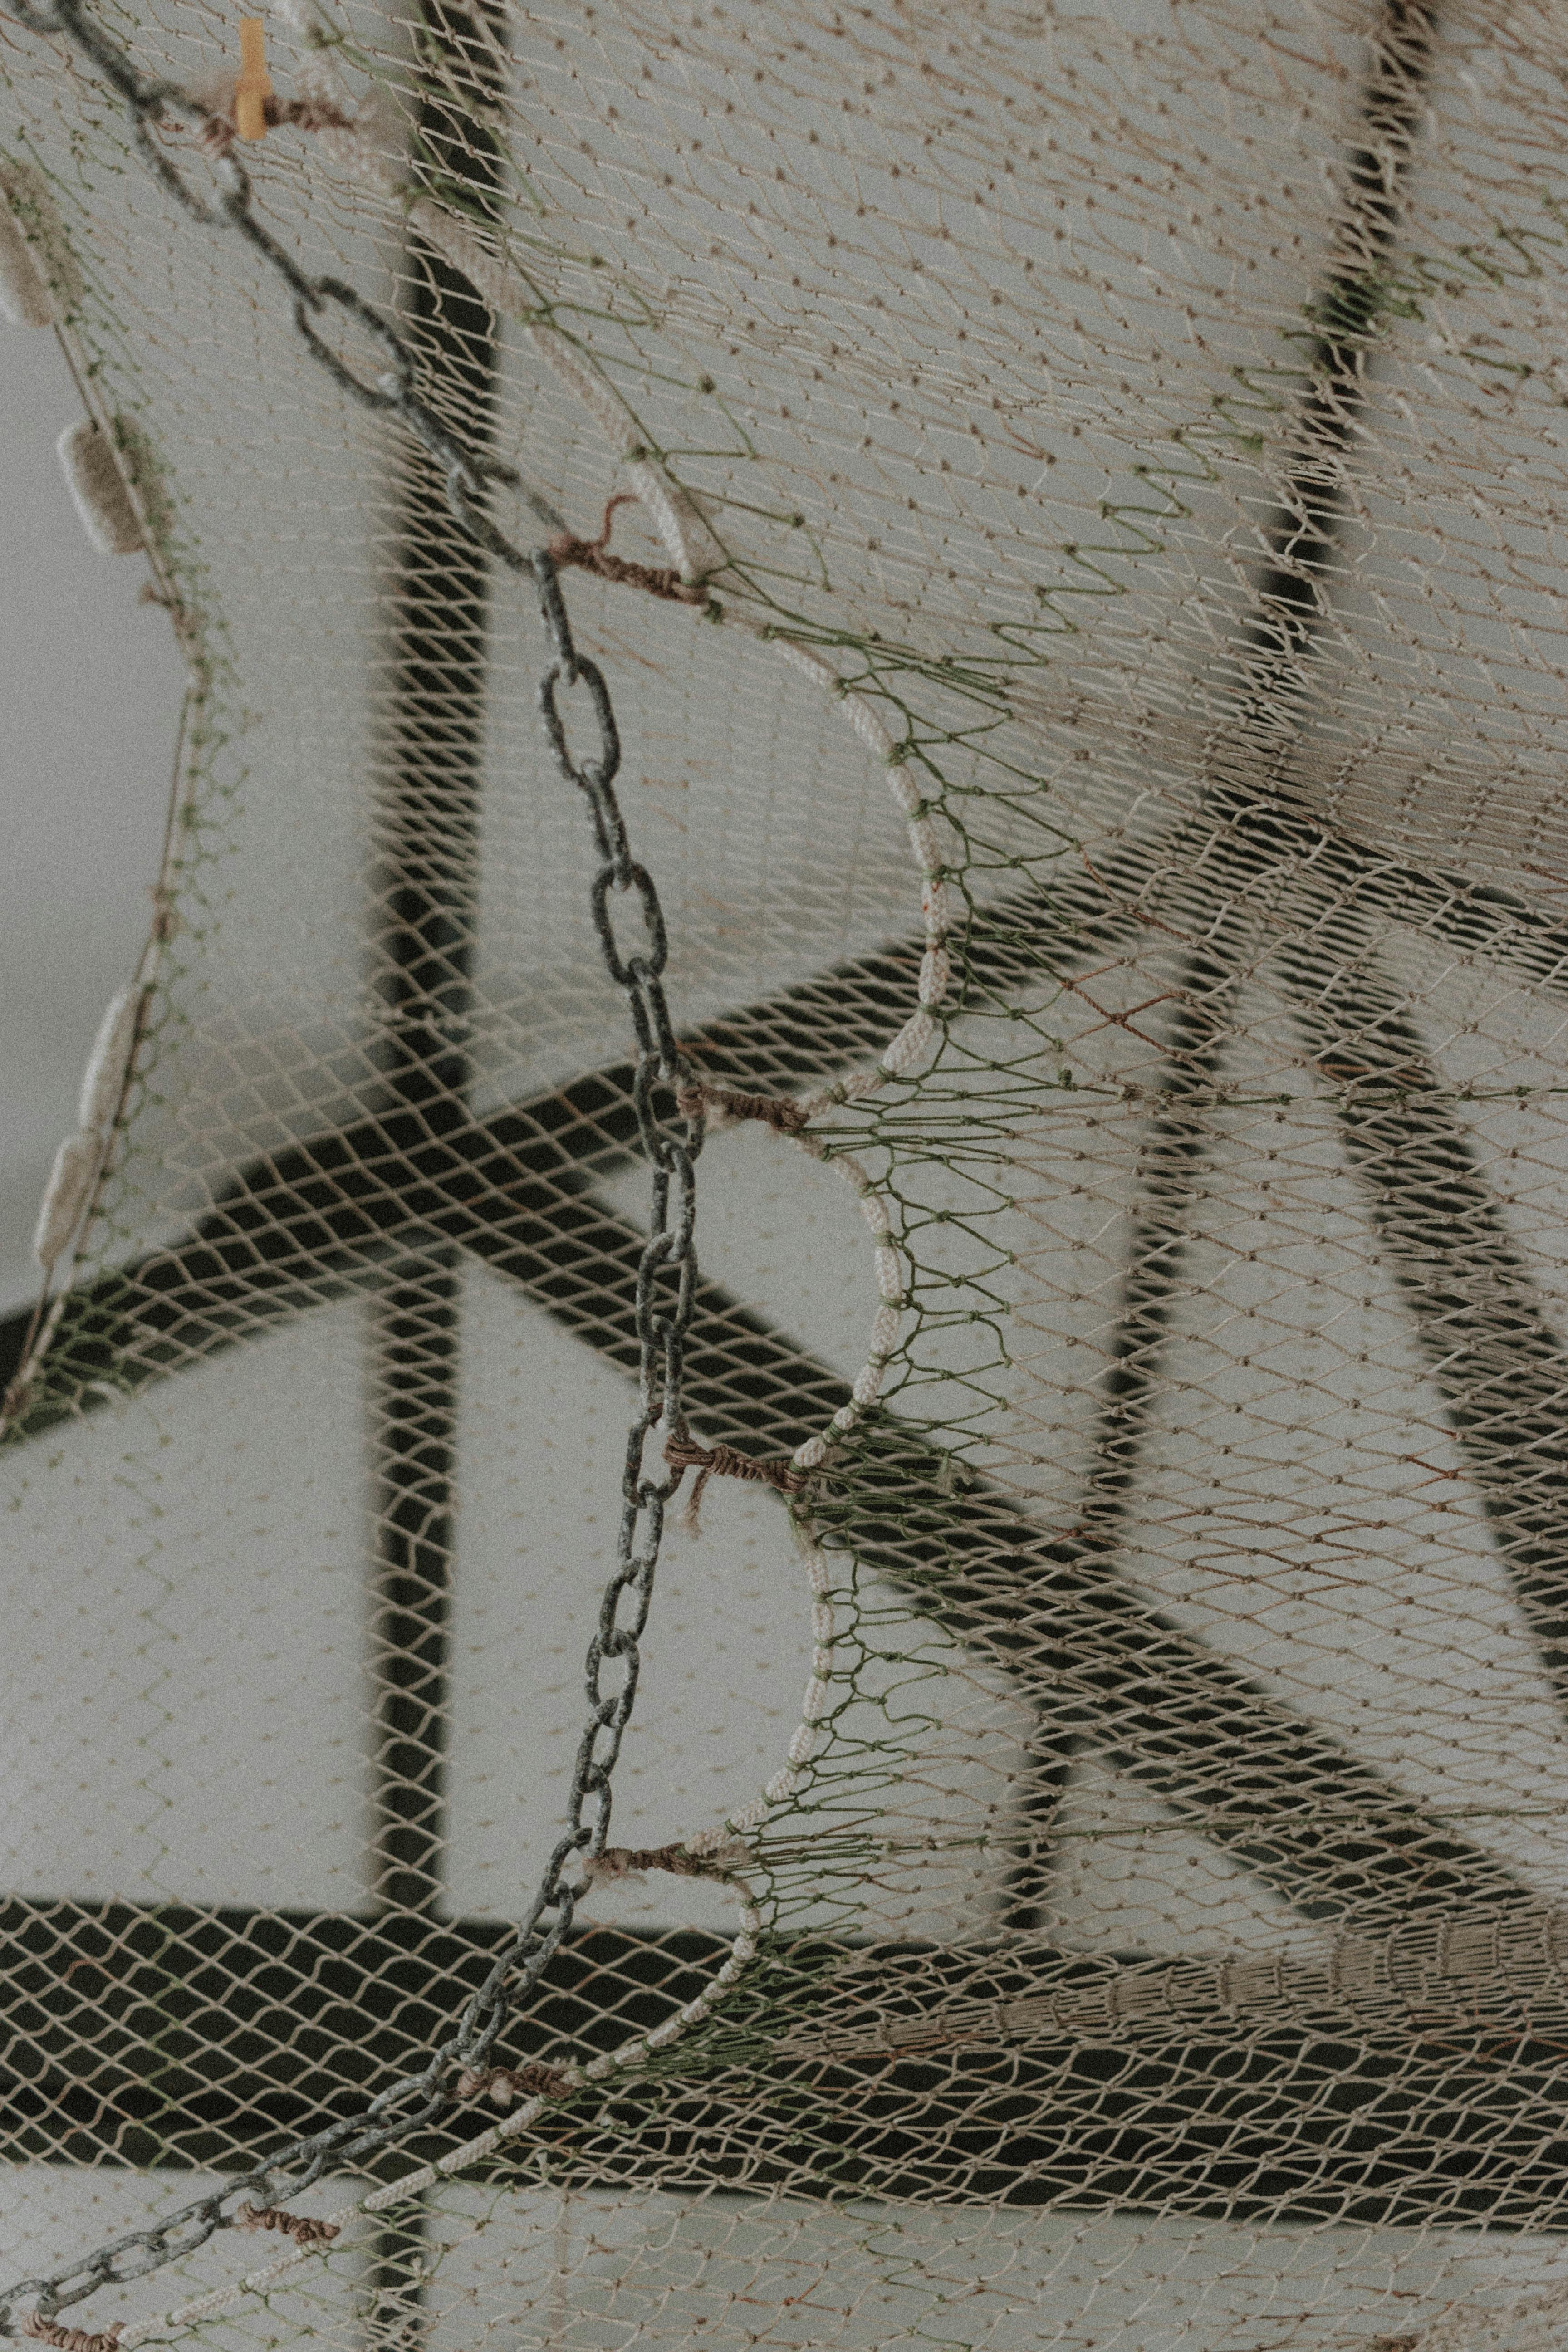 knitted net against white ceiling